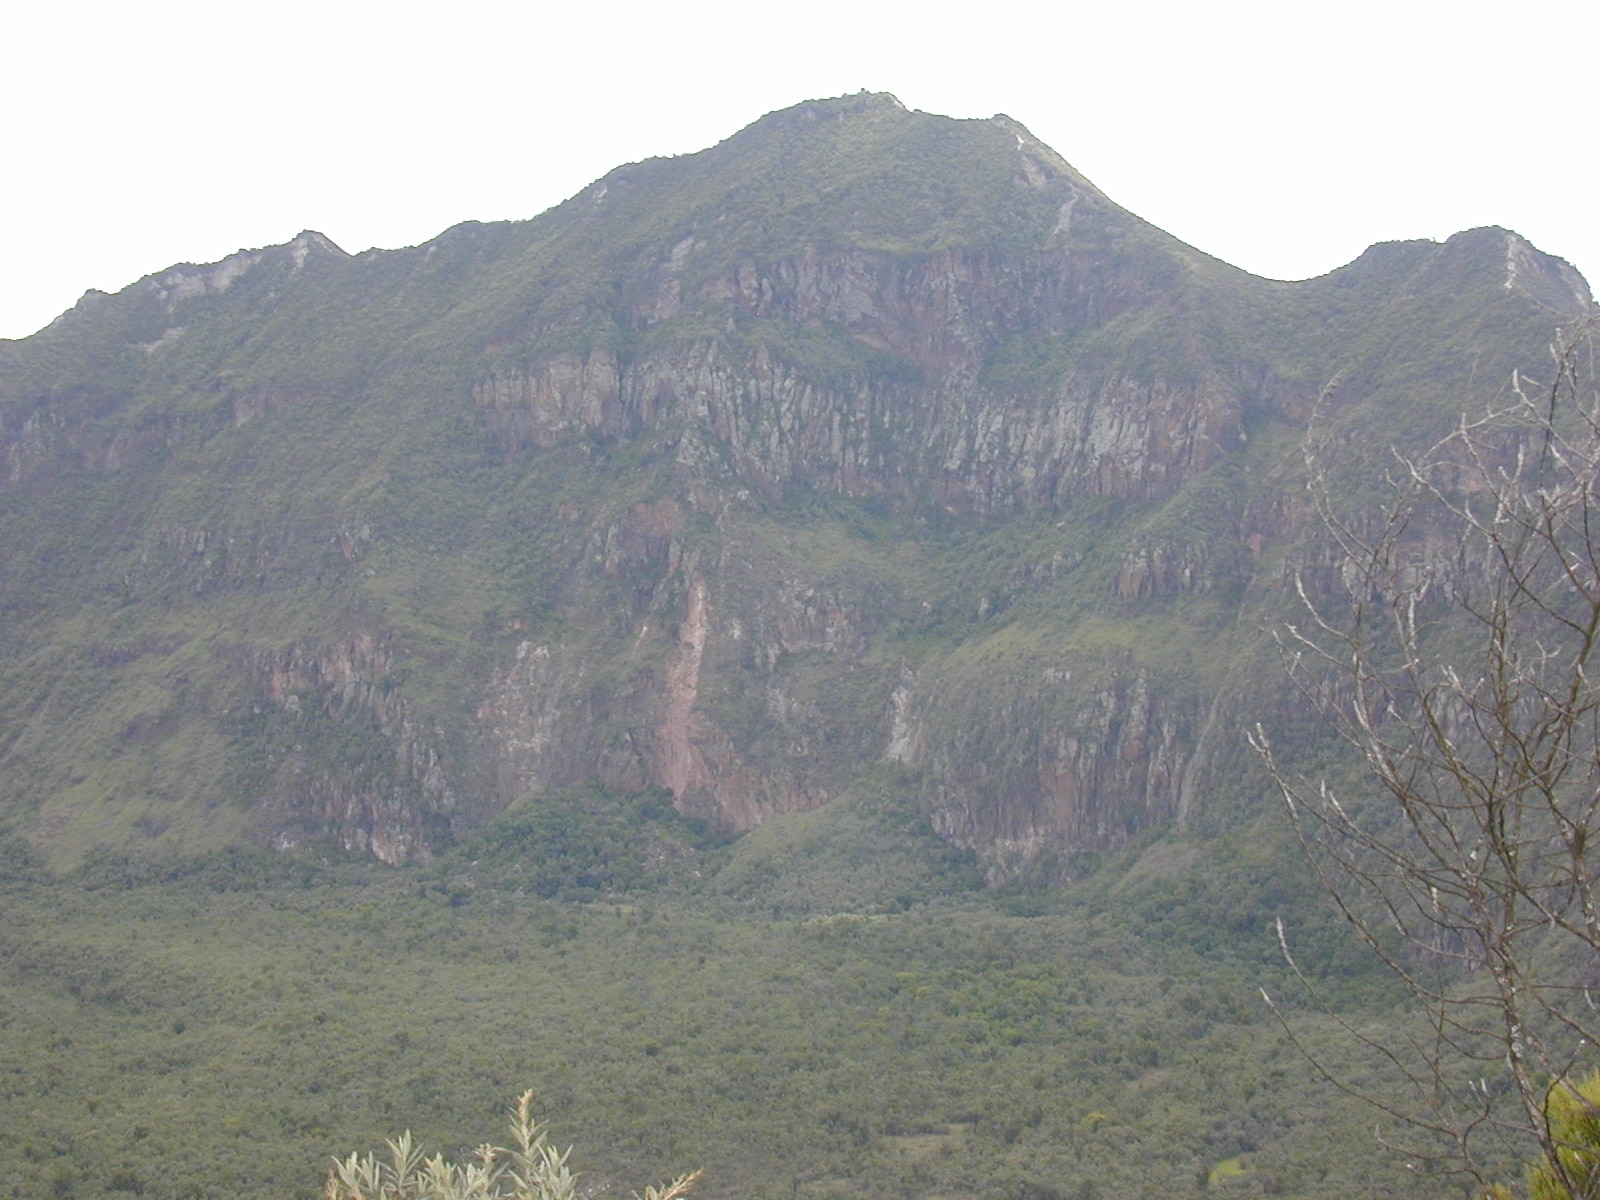 Mount Longonot